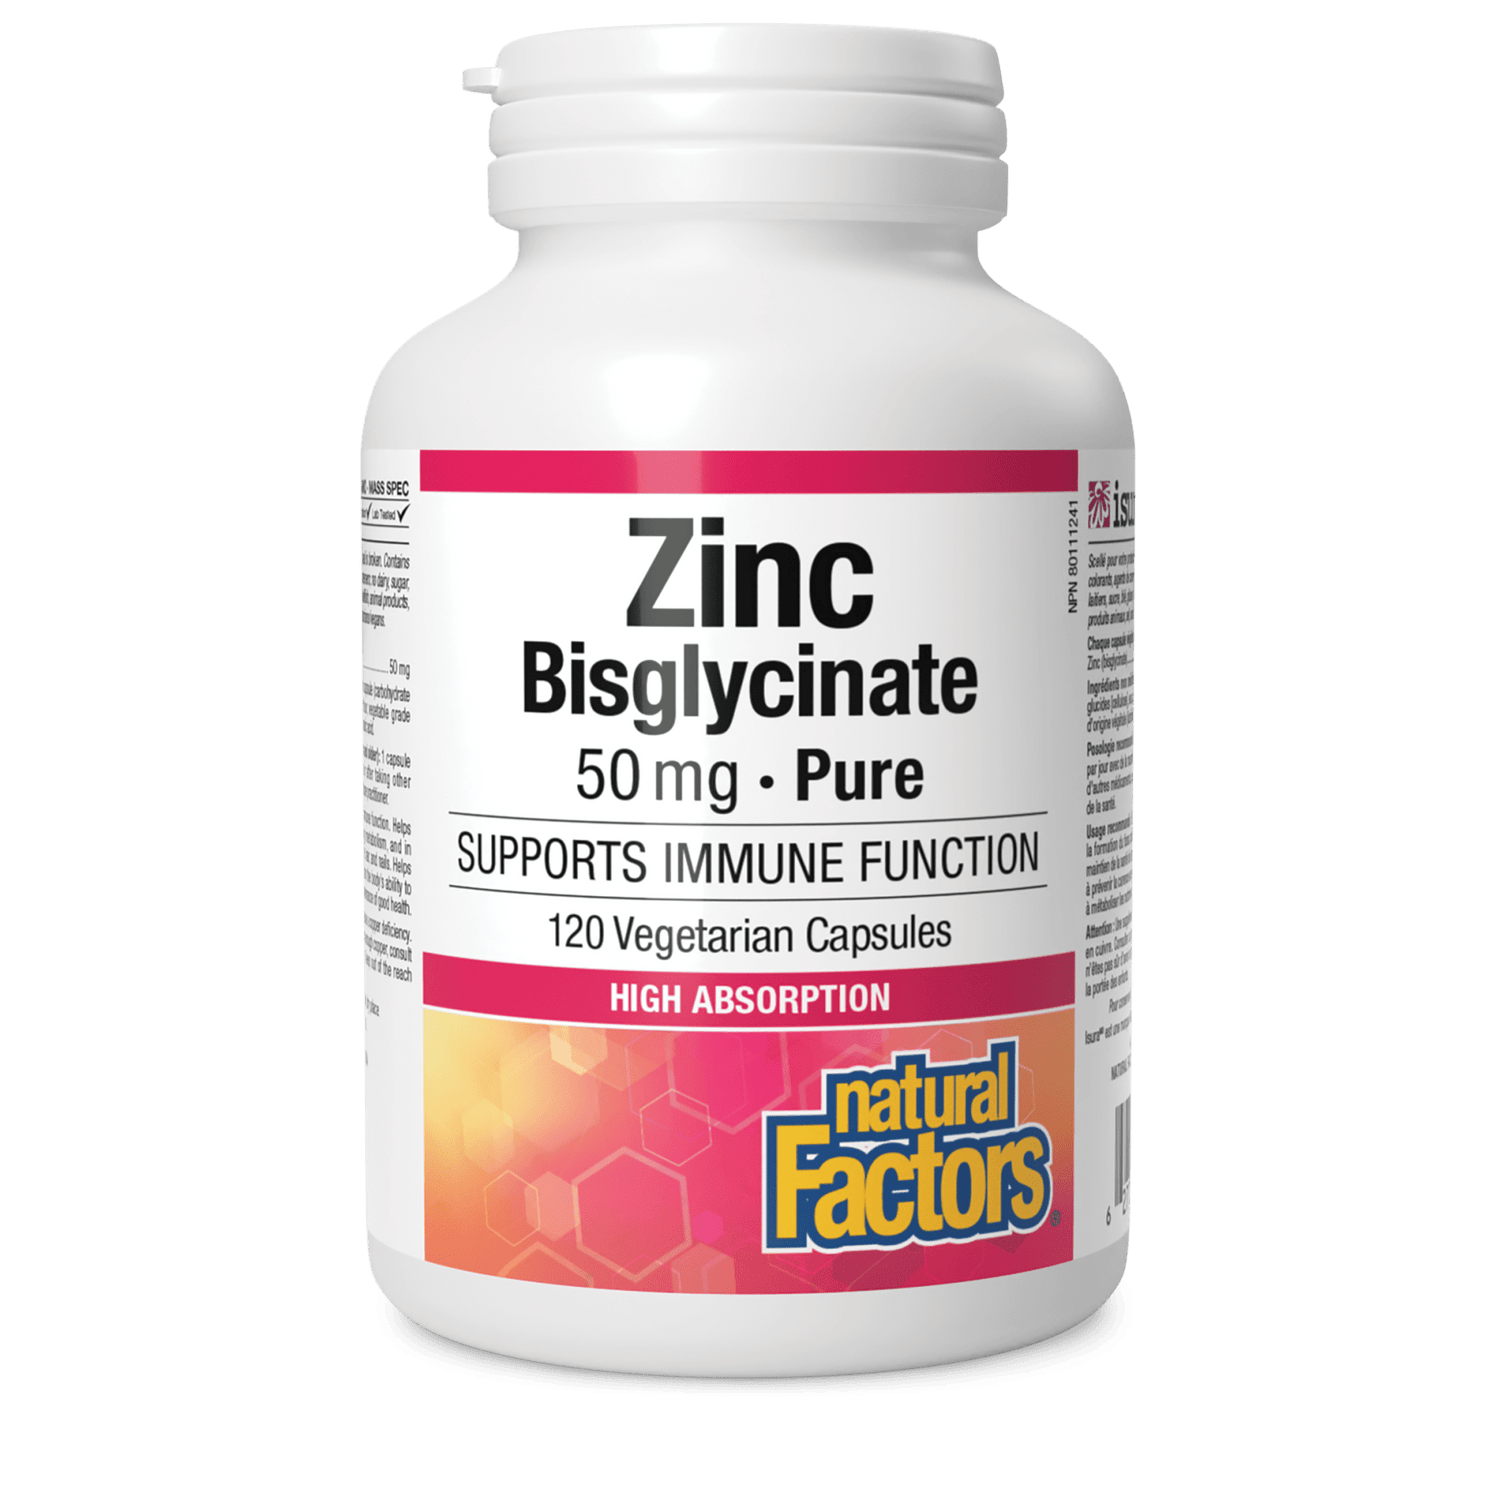 Zinc Bisglycinate 50 mg, Natural Factors|v|image|1693